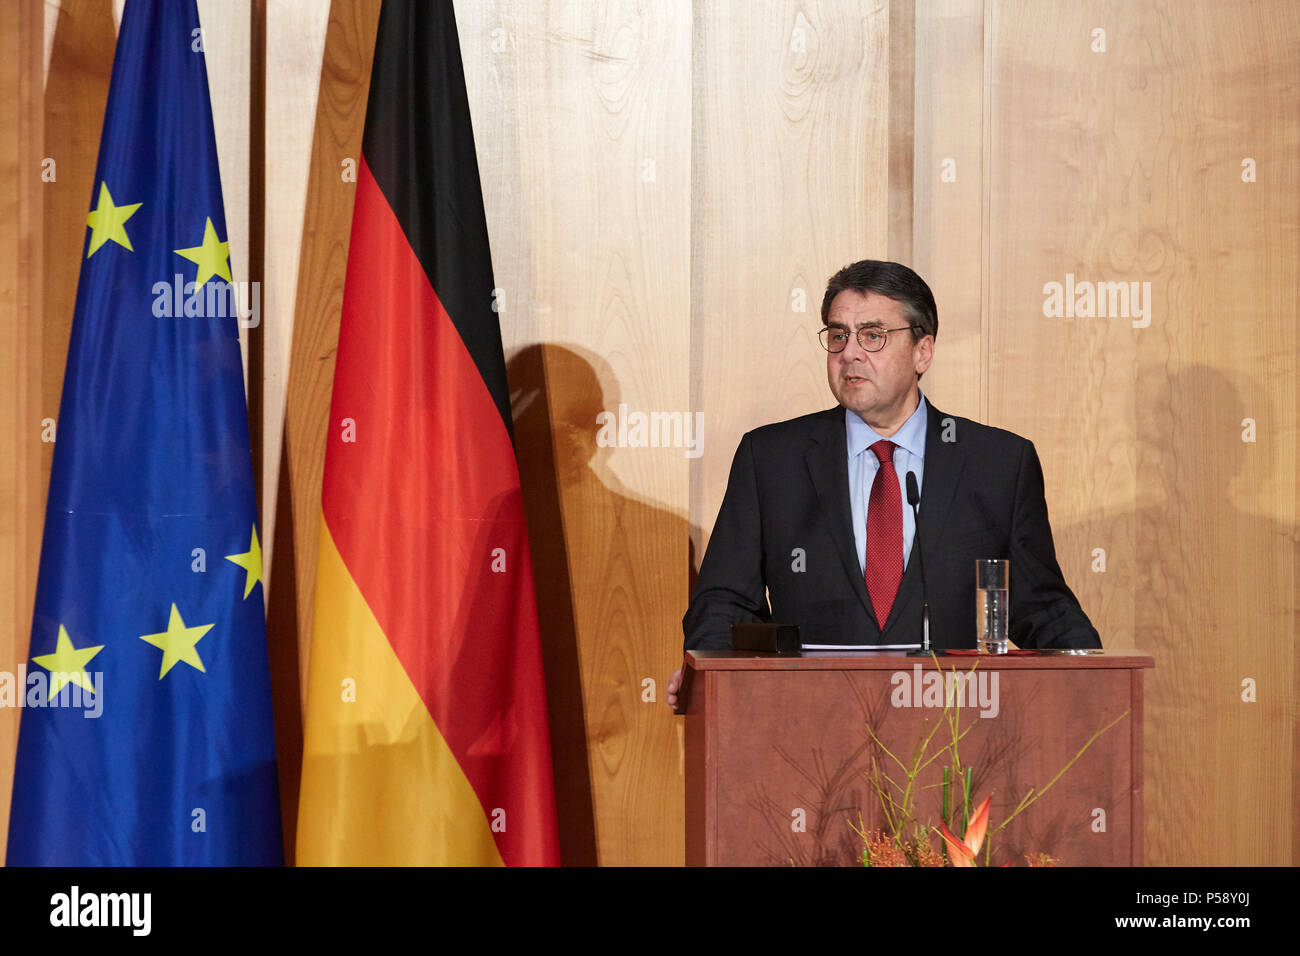 Berlín, Alemania - El canciller saliente Sigmar Gabriel tiene su discurso de despedida en el cambio ministerial en el Salón Mundial de la Cancillería. Foto de stock